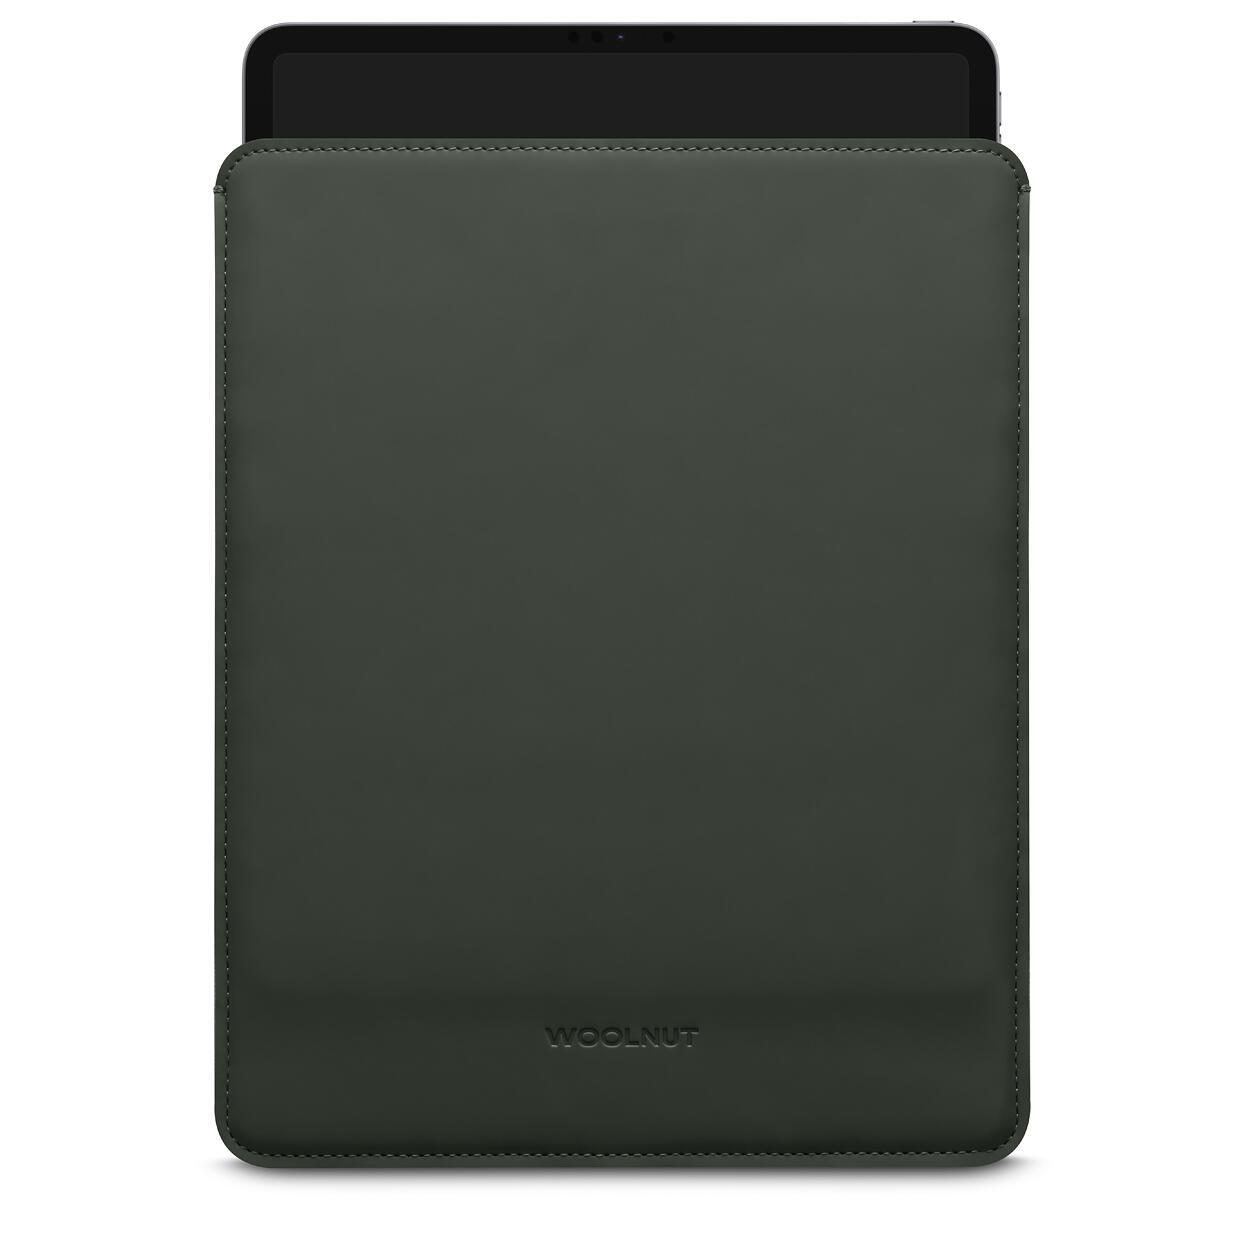 Woolnut beschichtete iPad Hülle für iPad Pro 12,9" & iPad Air , grün von Woolnut